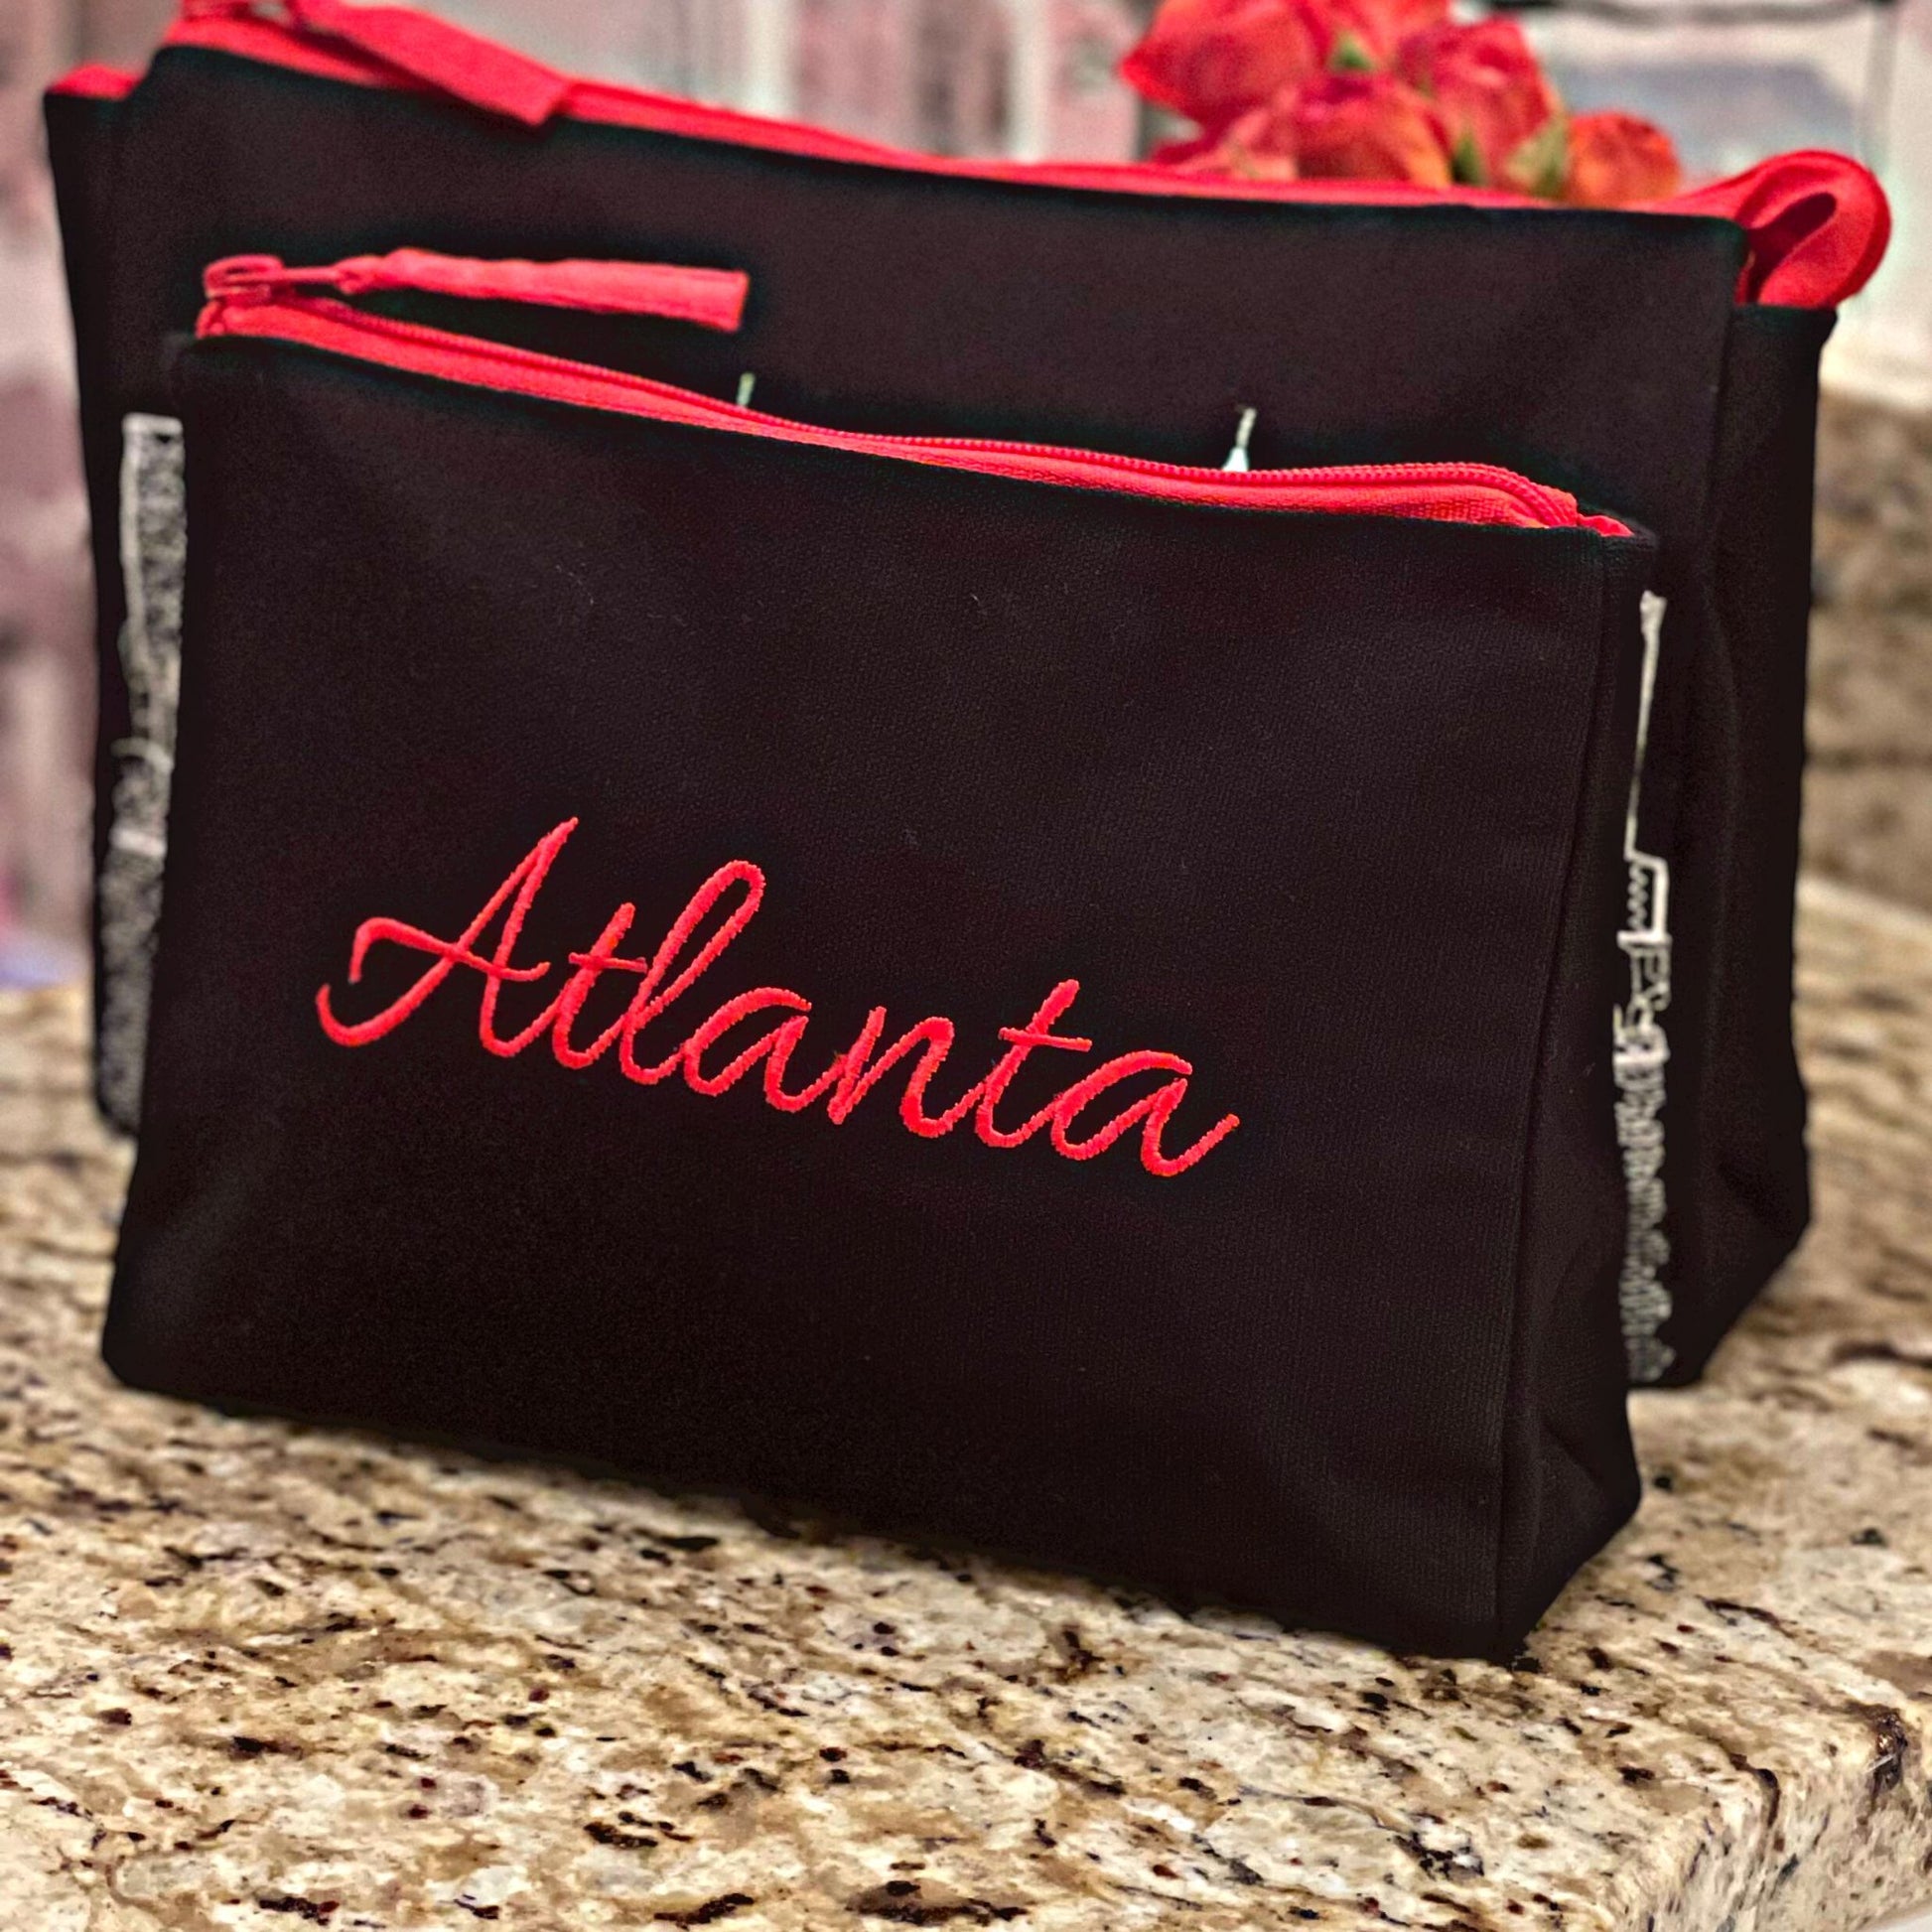 Atlanta makeup bag night set